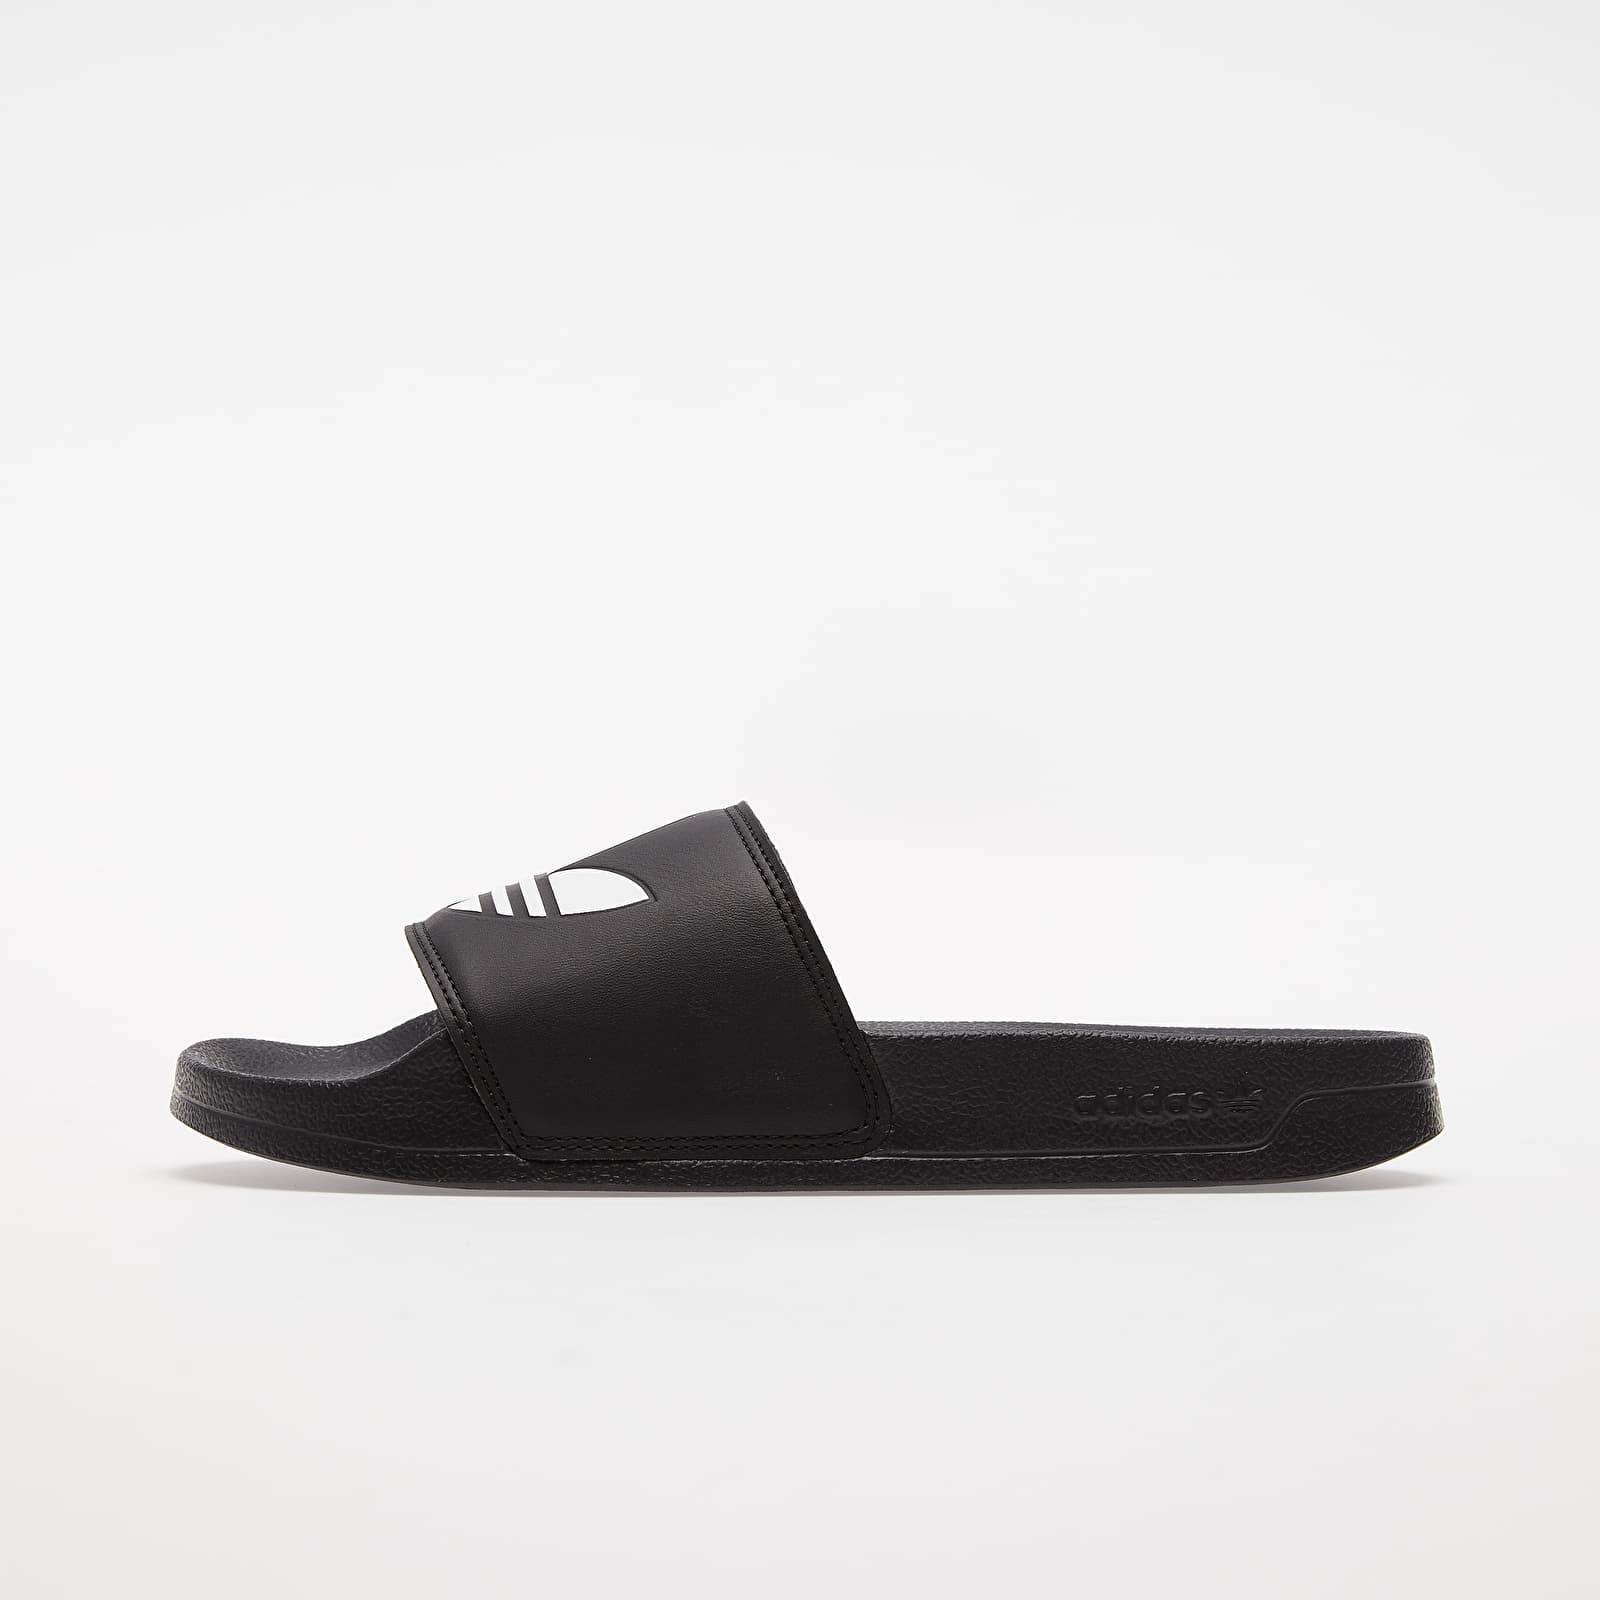 Men's shoes adidas Adilette Lite Core Black/ Ftwr White/ Core Black